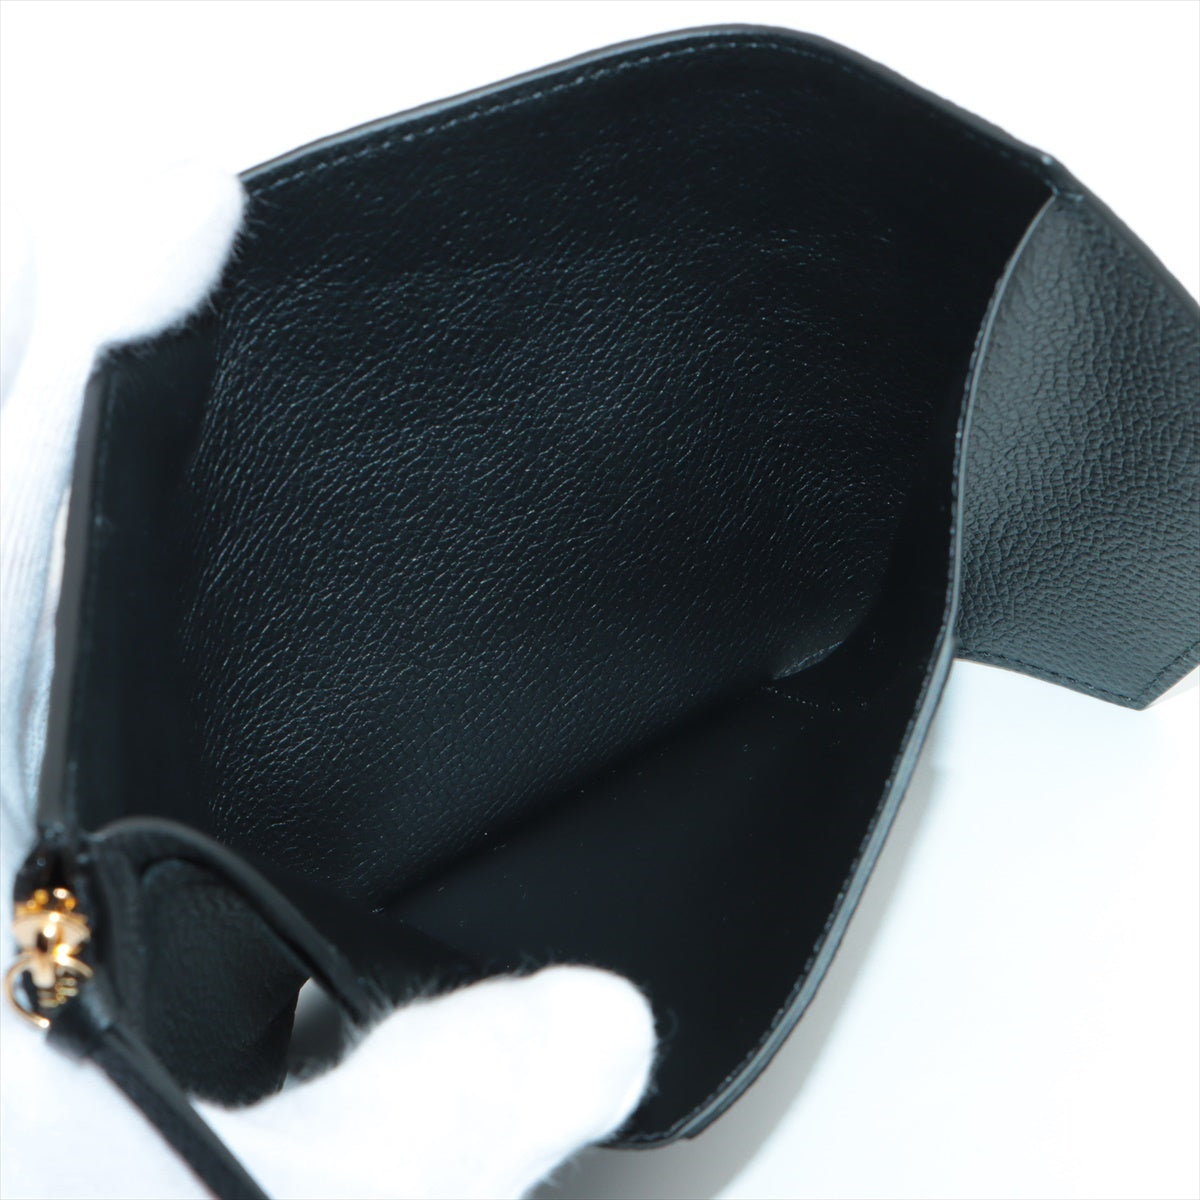 Louis Vuitton Empreinte Portefeuille Victorine M64060 Noir Compact Wallet Responsive RFID